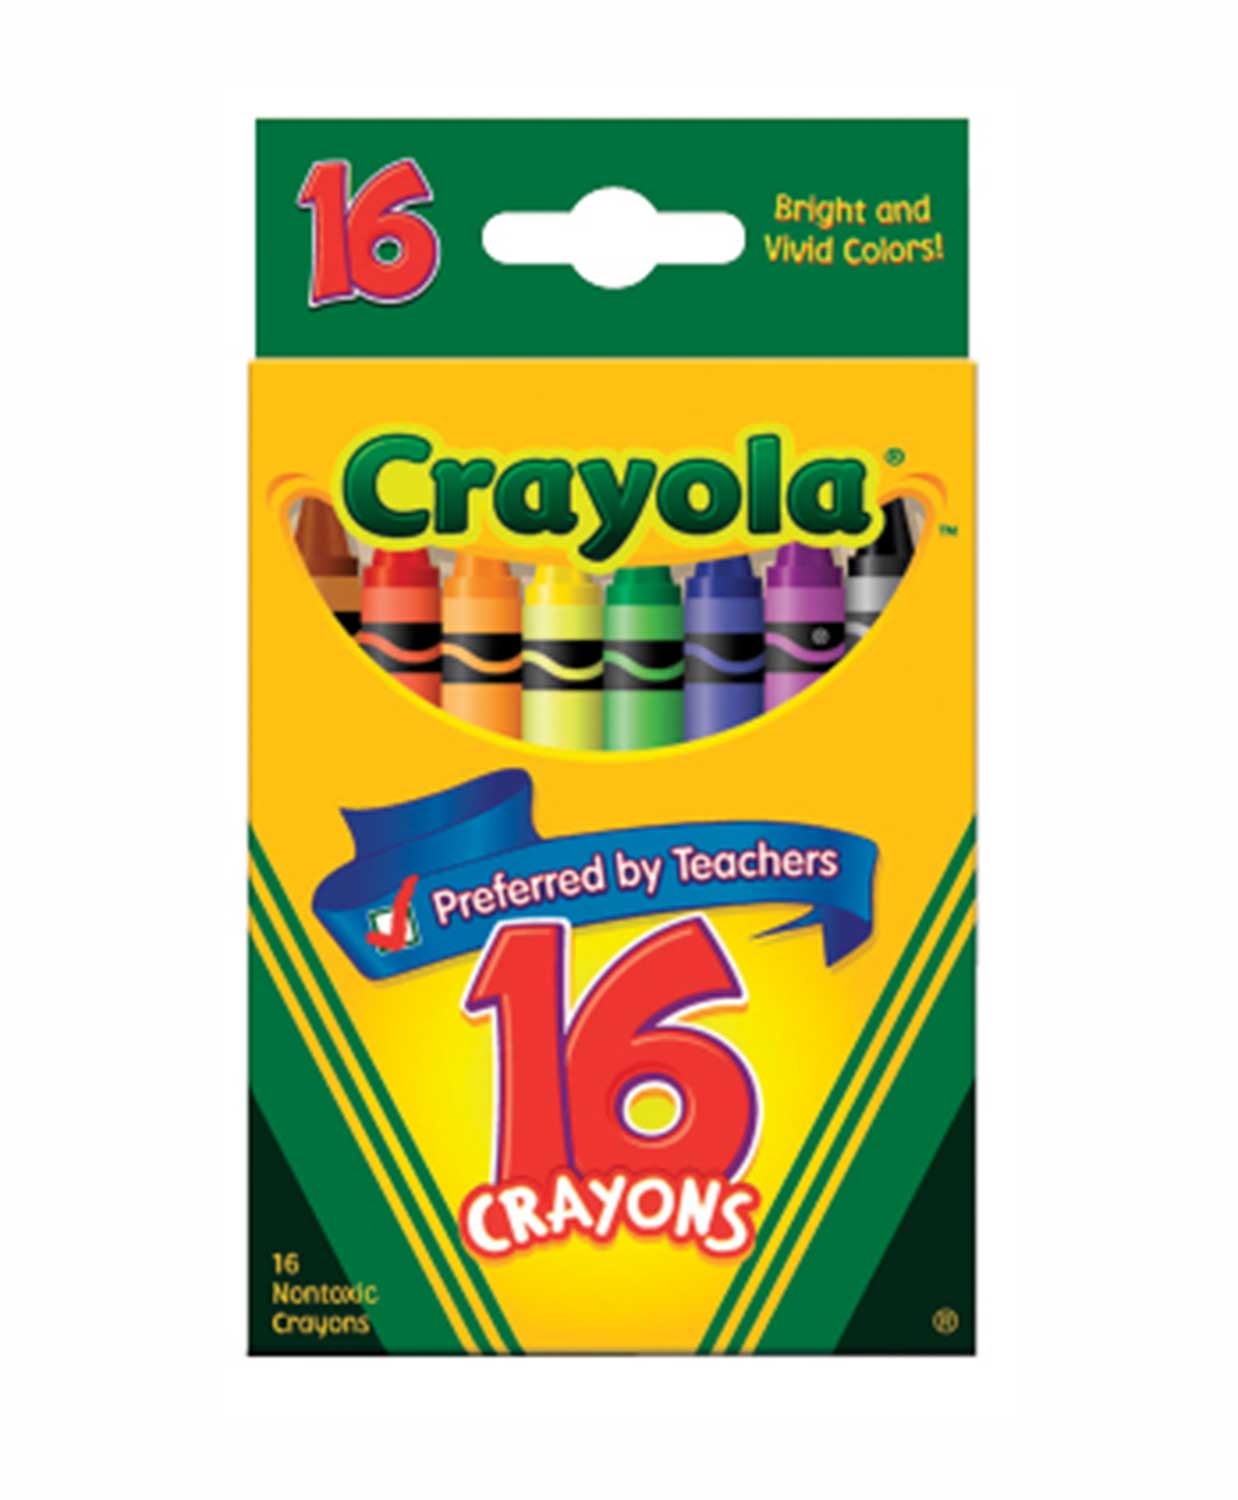 Crayola - Crayons Bright & Vivid Colors - 16 CT - P/C - 2201